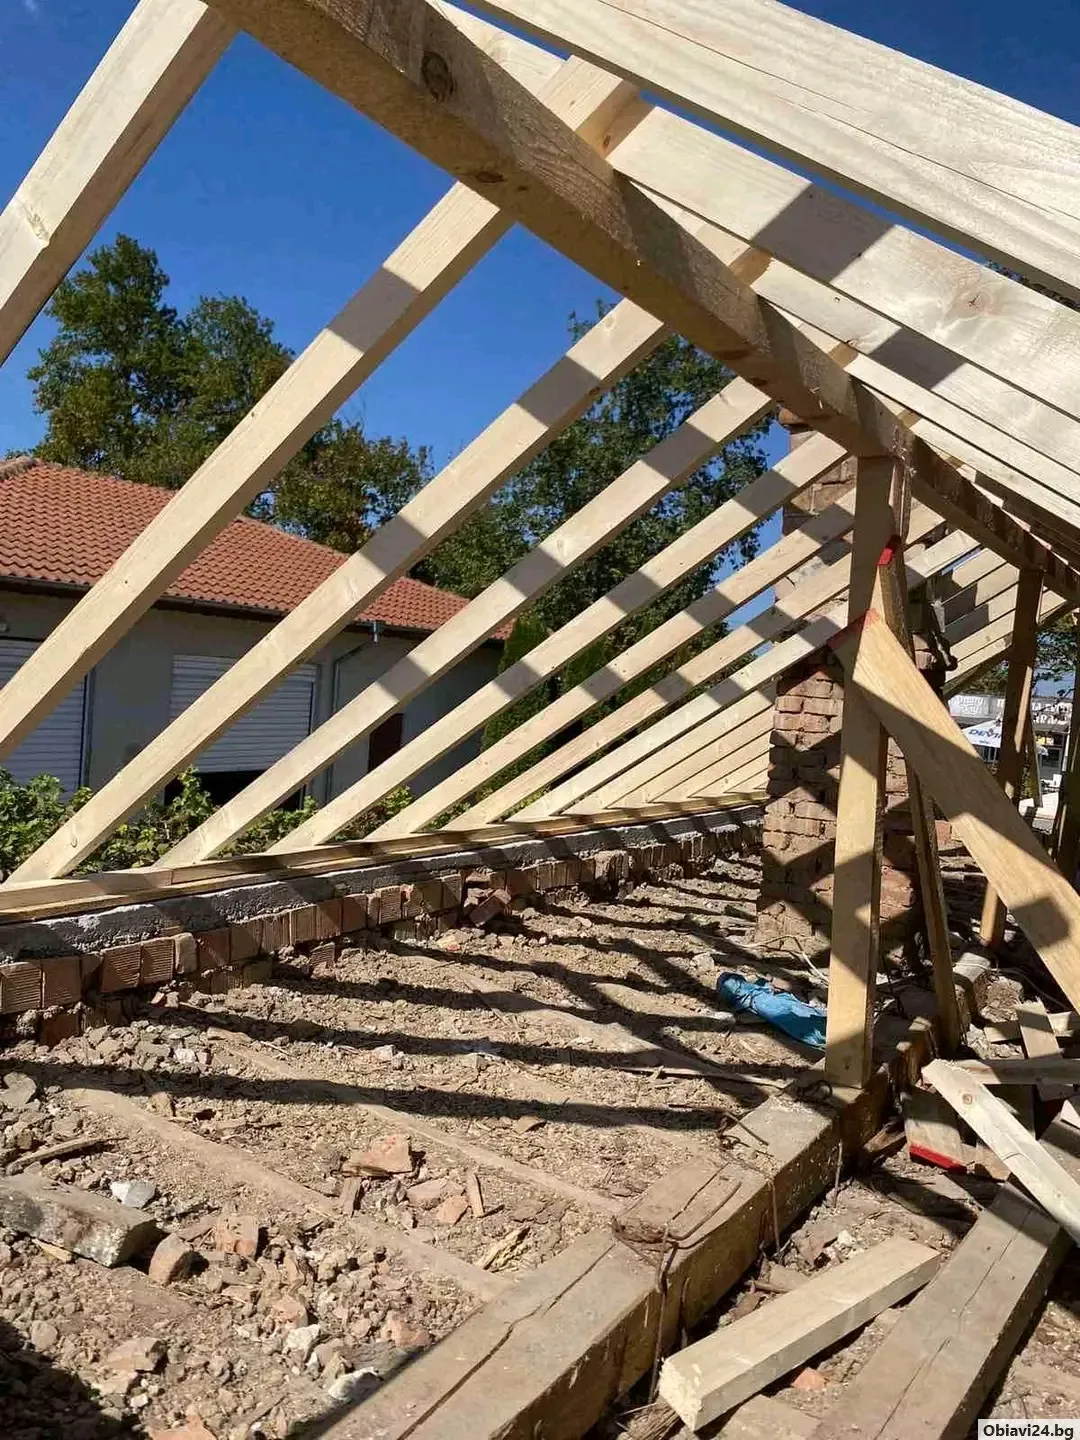 Строителна фирма строй 94 еоод изграждане и ремонт на покриви навеси улуци огради вътрешни ремонти - obiavi24.bg